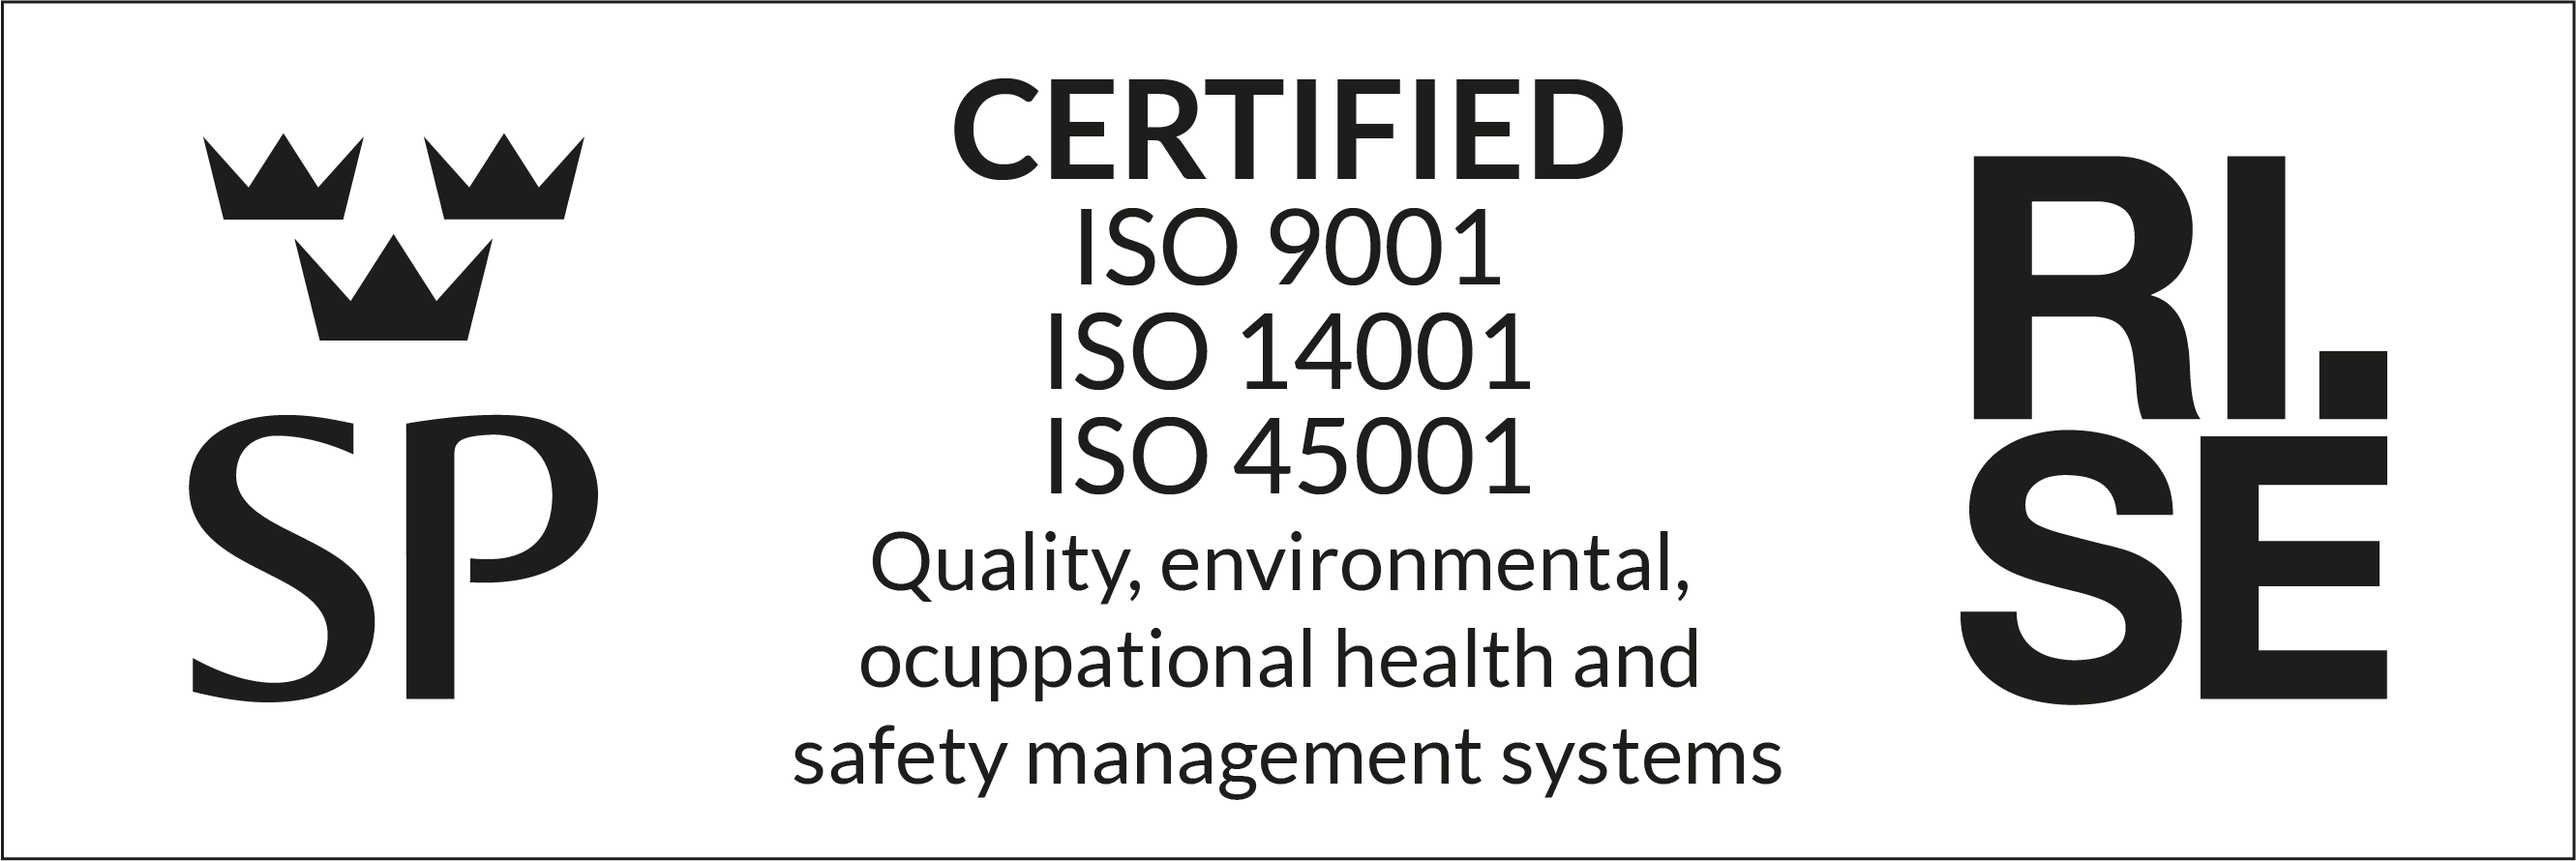 Information om miljö och kvalitetcertifiering enligt AFS 2001:01